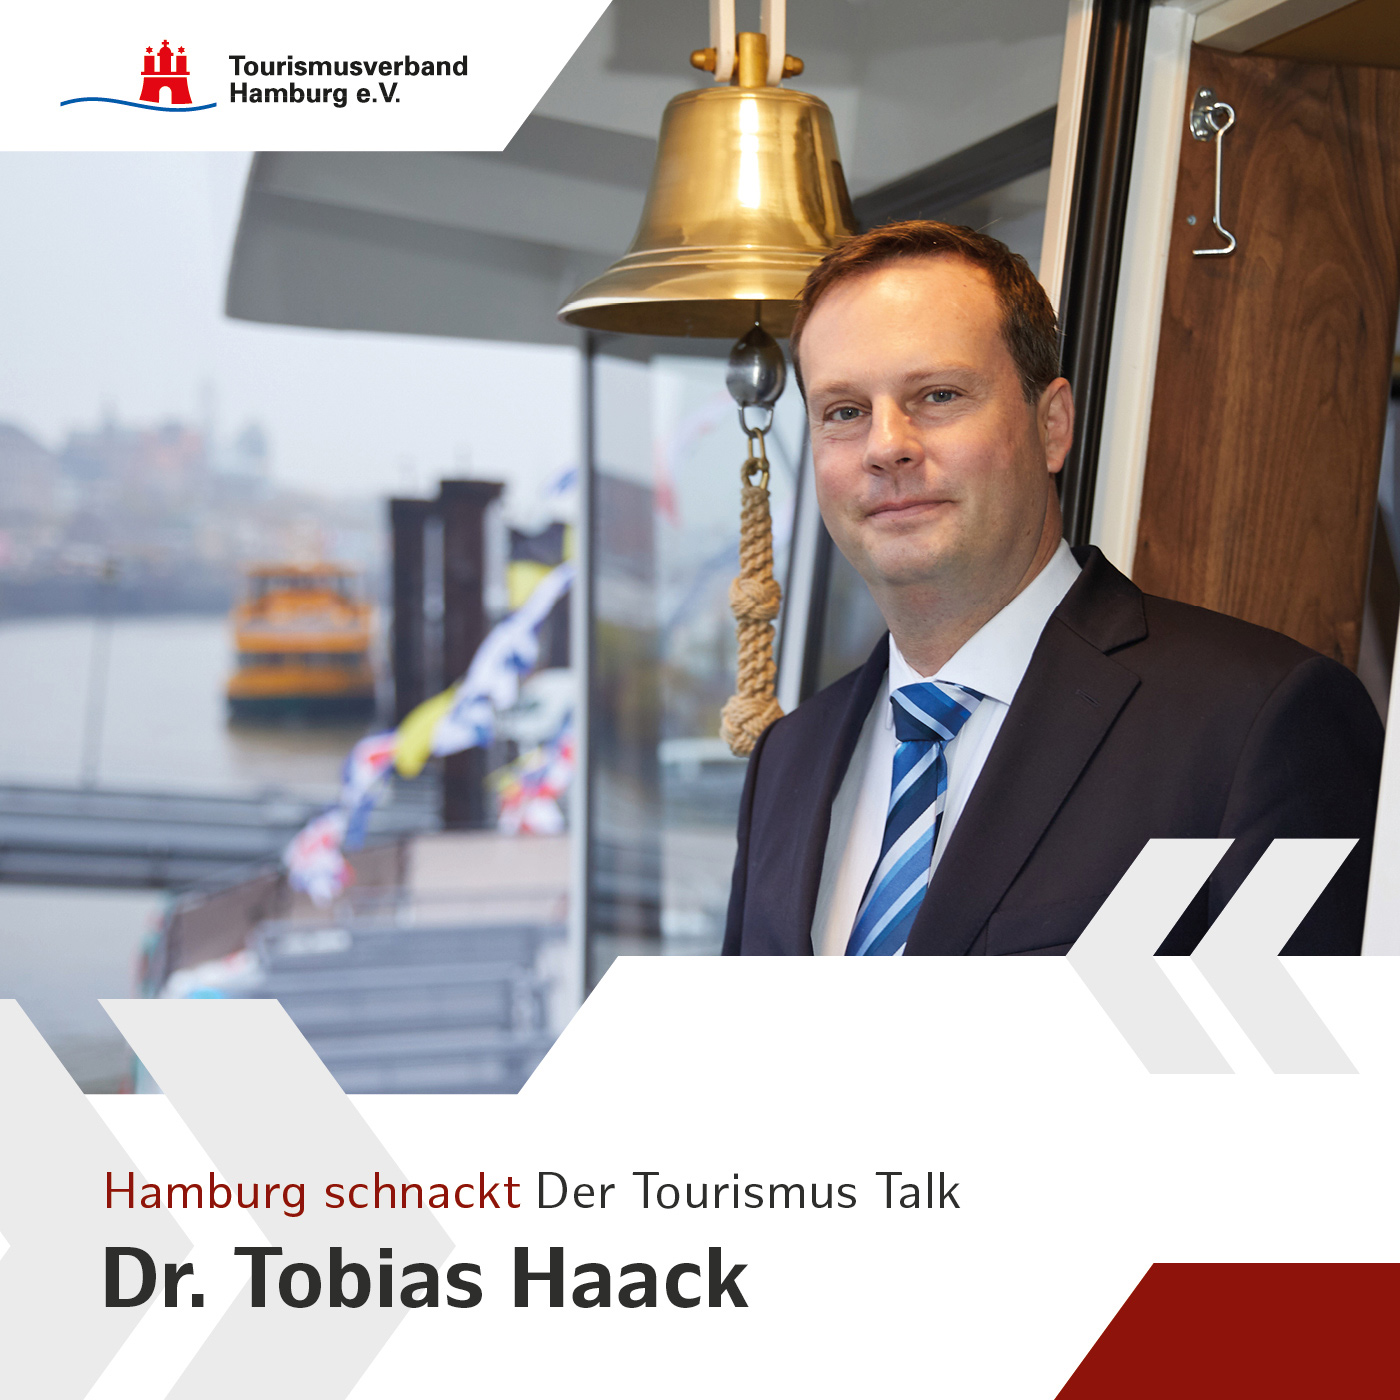 Hamburg schnackt mit Dr. Tobias Haack